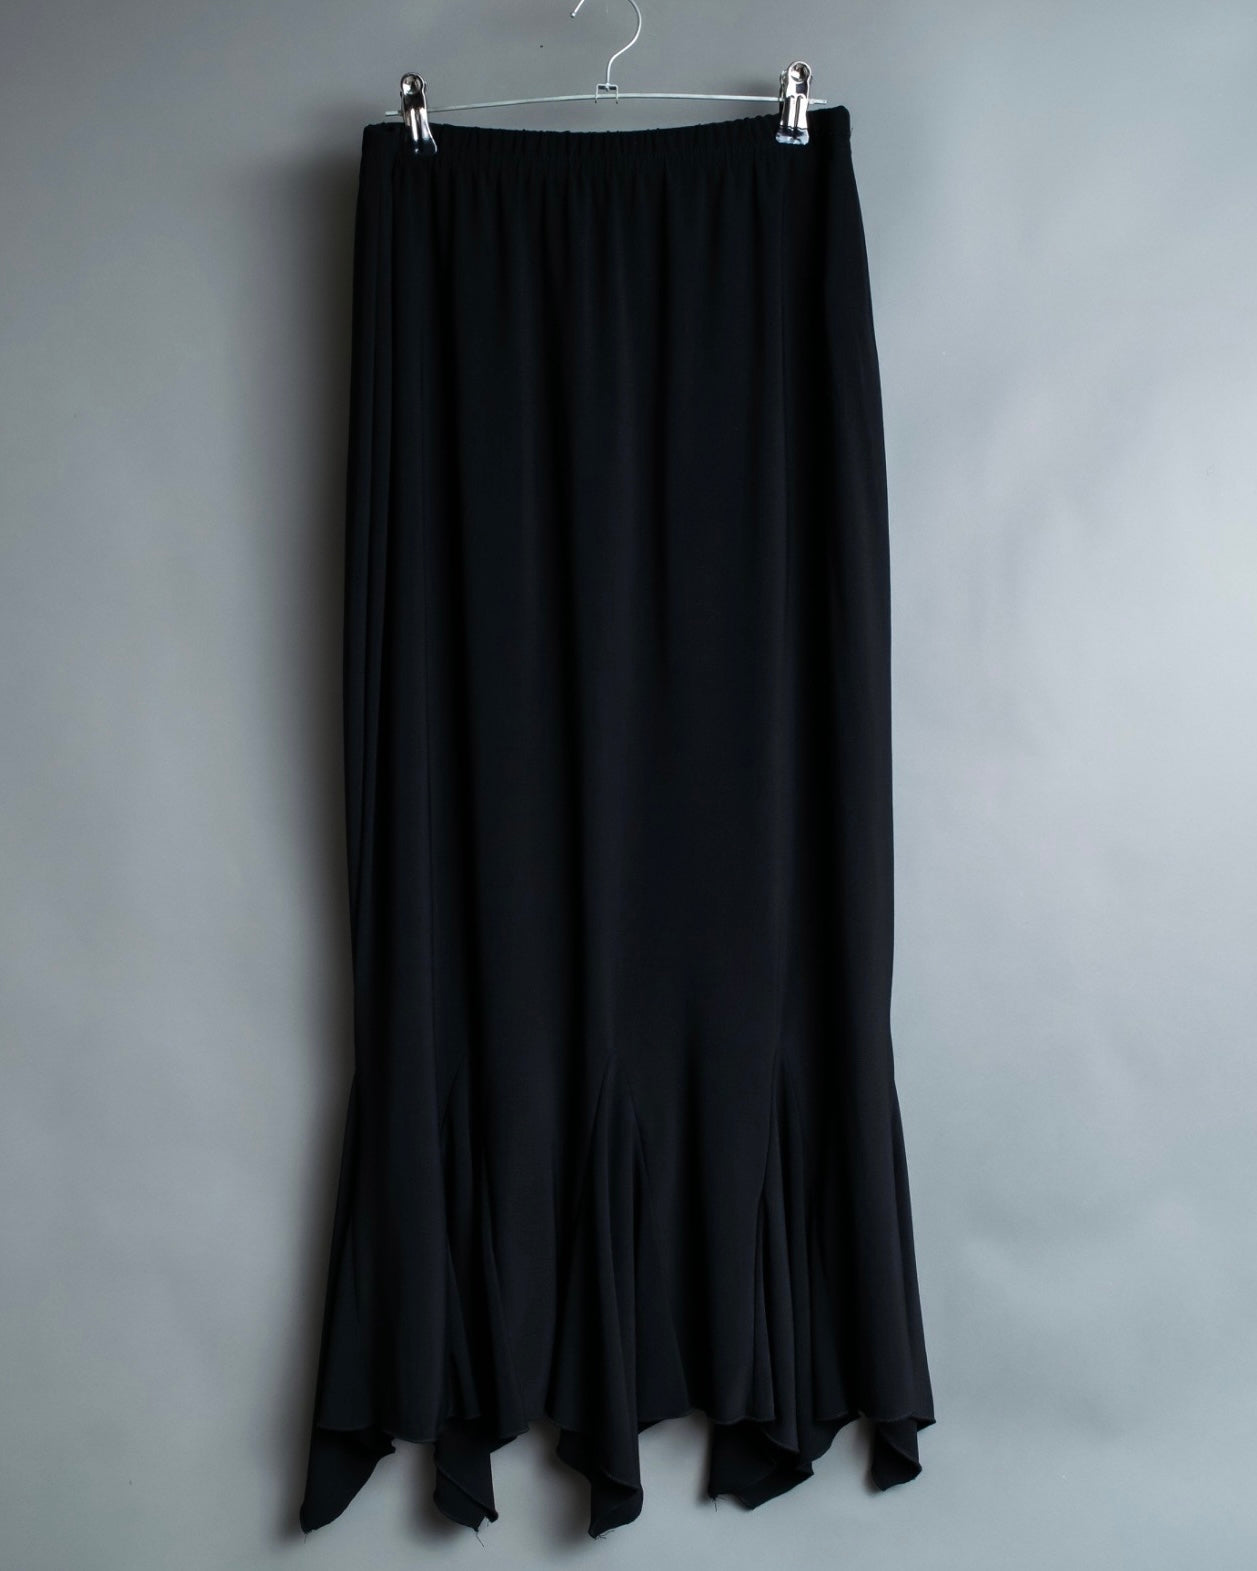 mermaid black unisex skirt